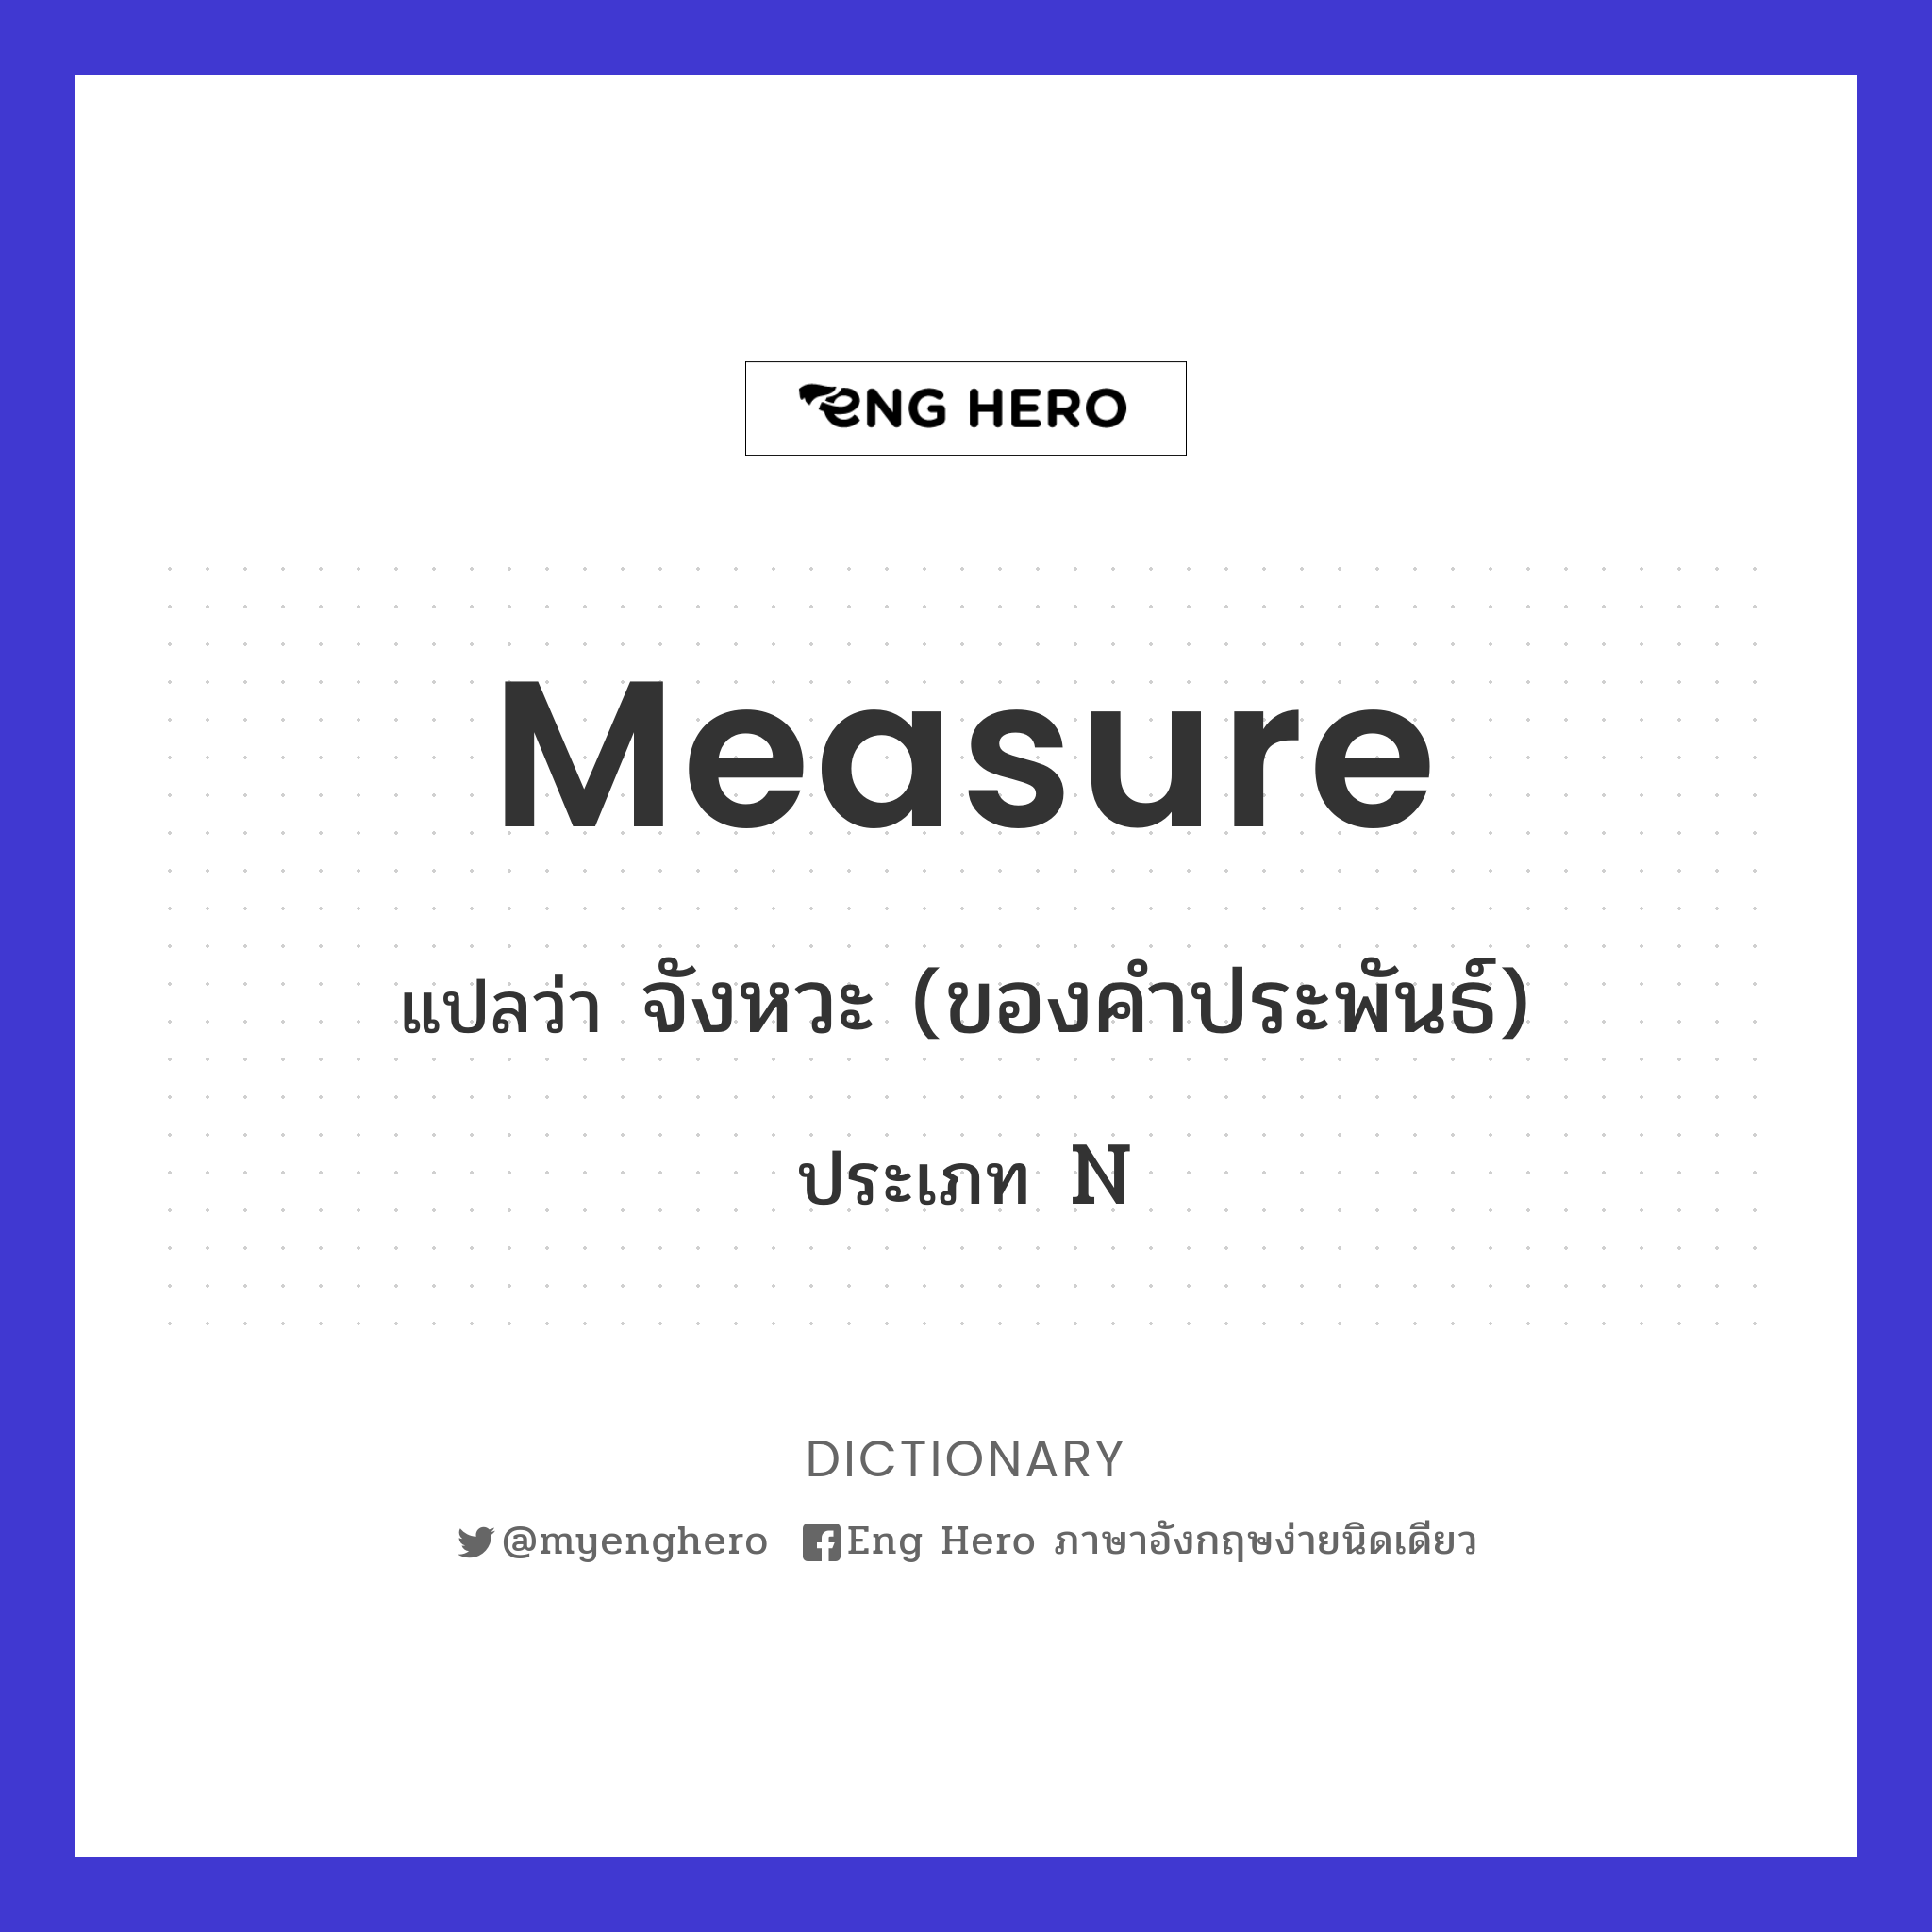 measure